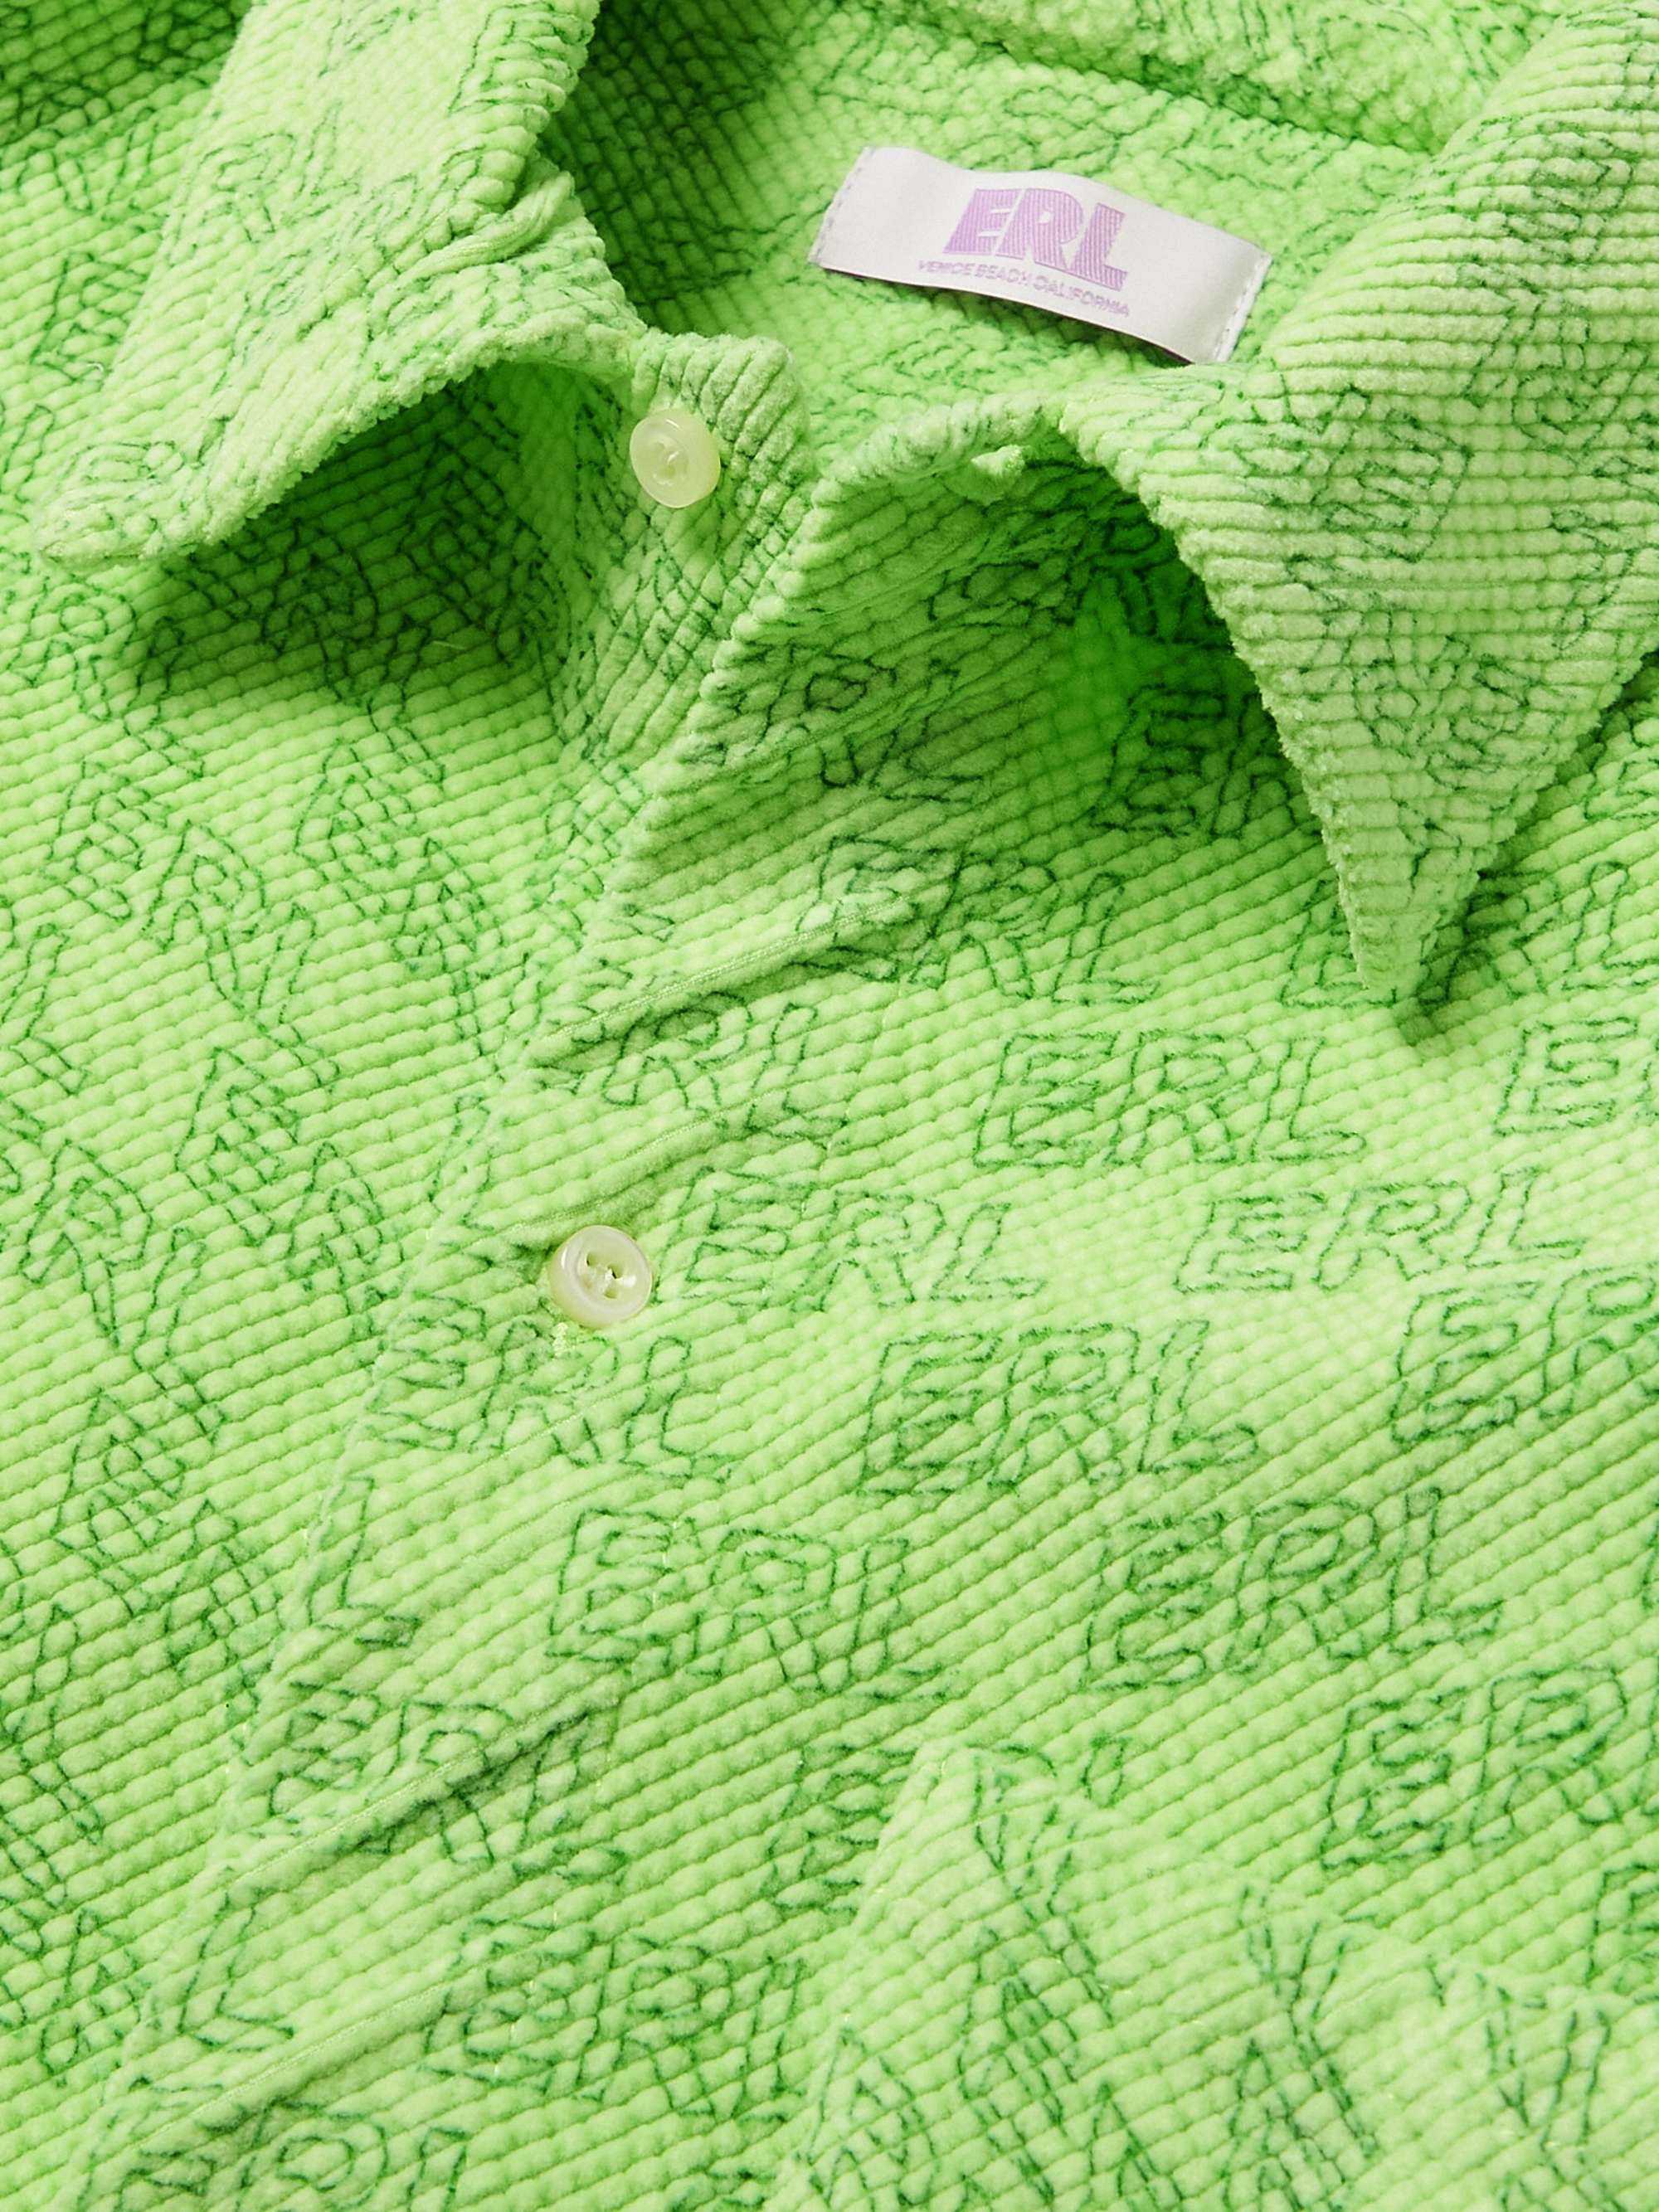 ERL KIDS Logo-Print Cotton-Blend Corduroy Shirt